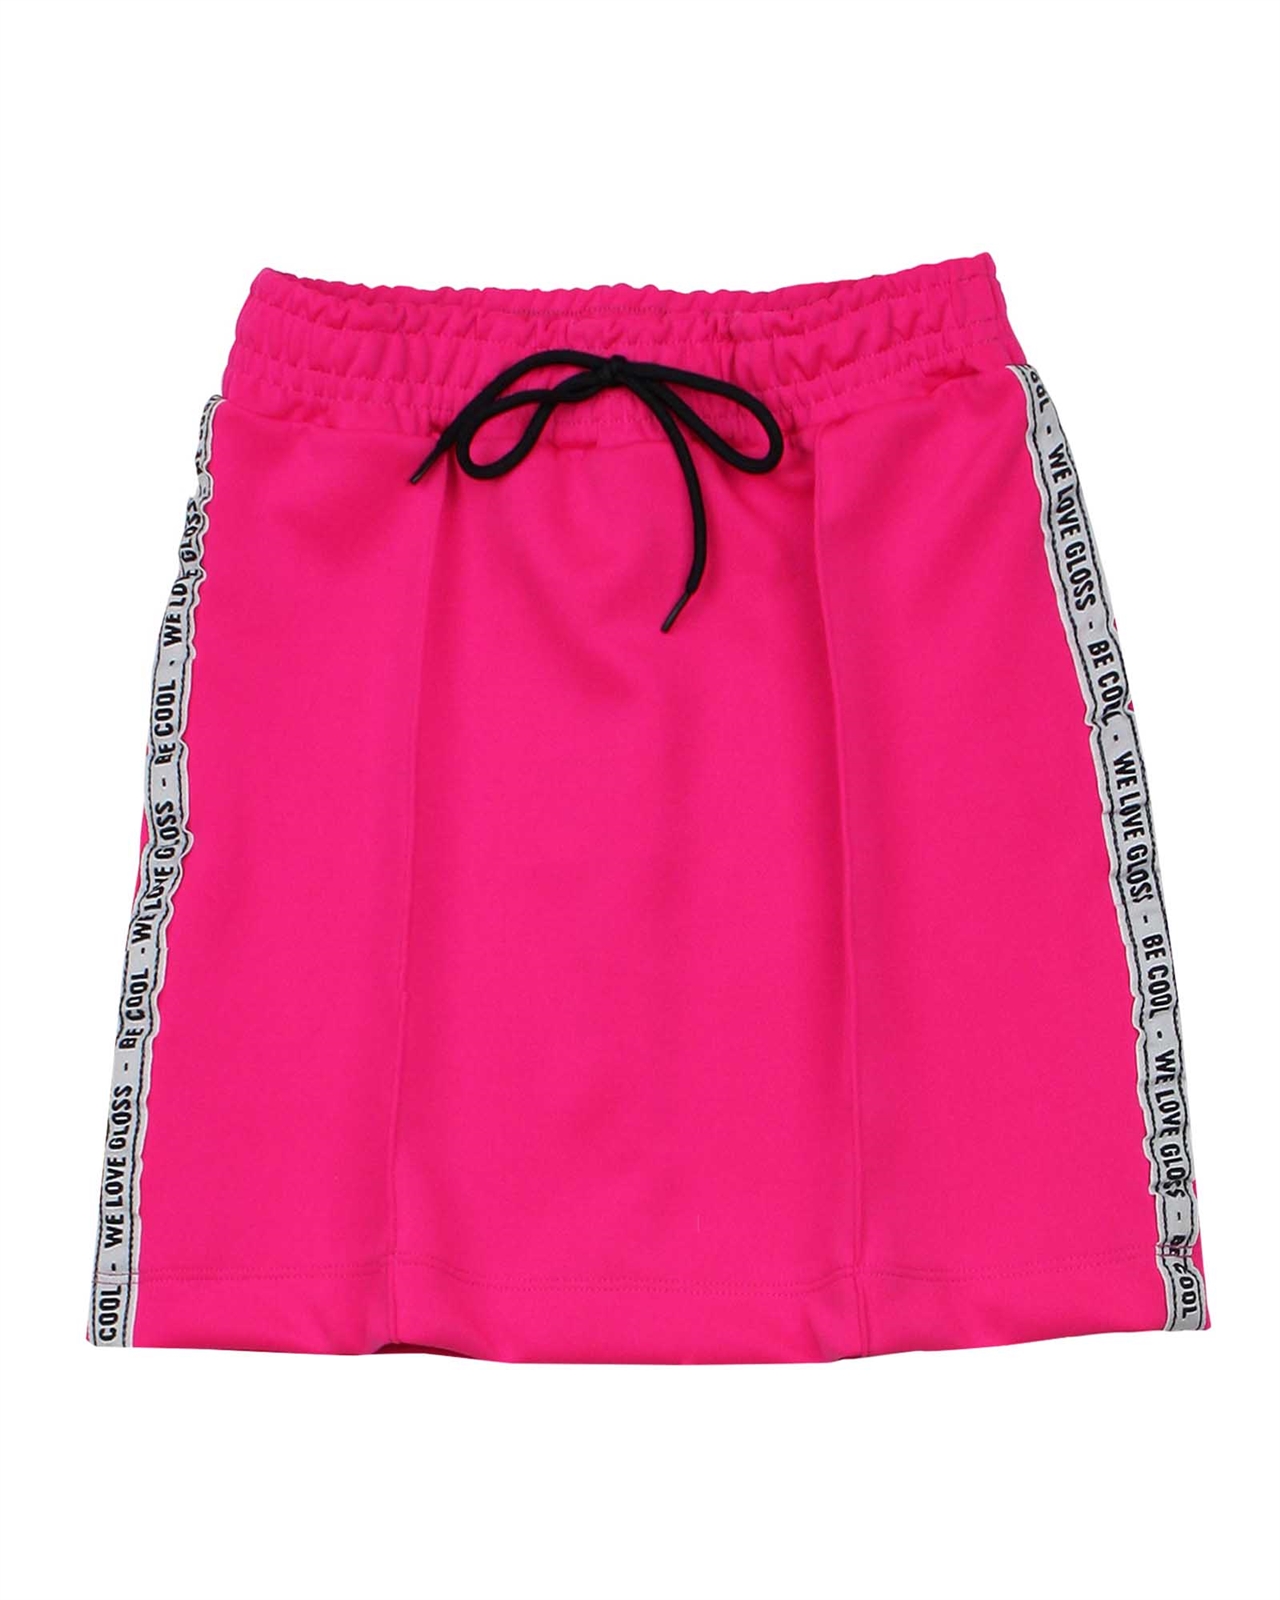 Gloss Junior Girl's Sporty Skirt in Fuchsia - We Love Gloss - Gloss ...